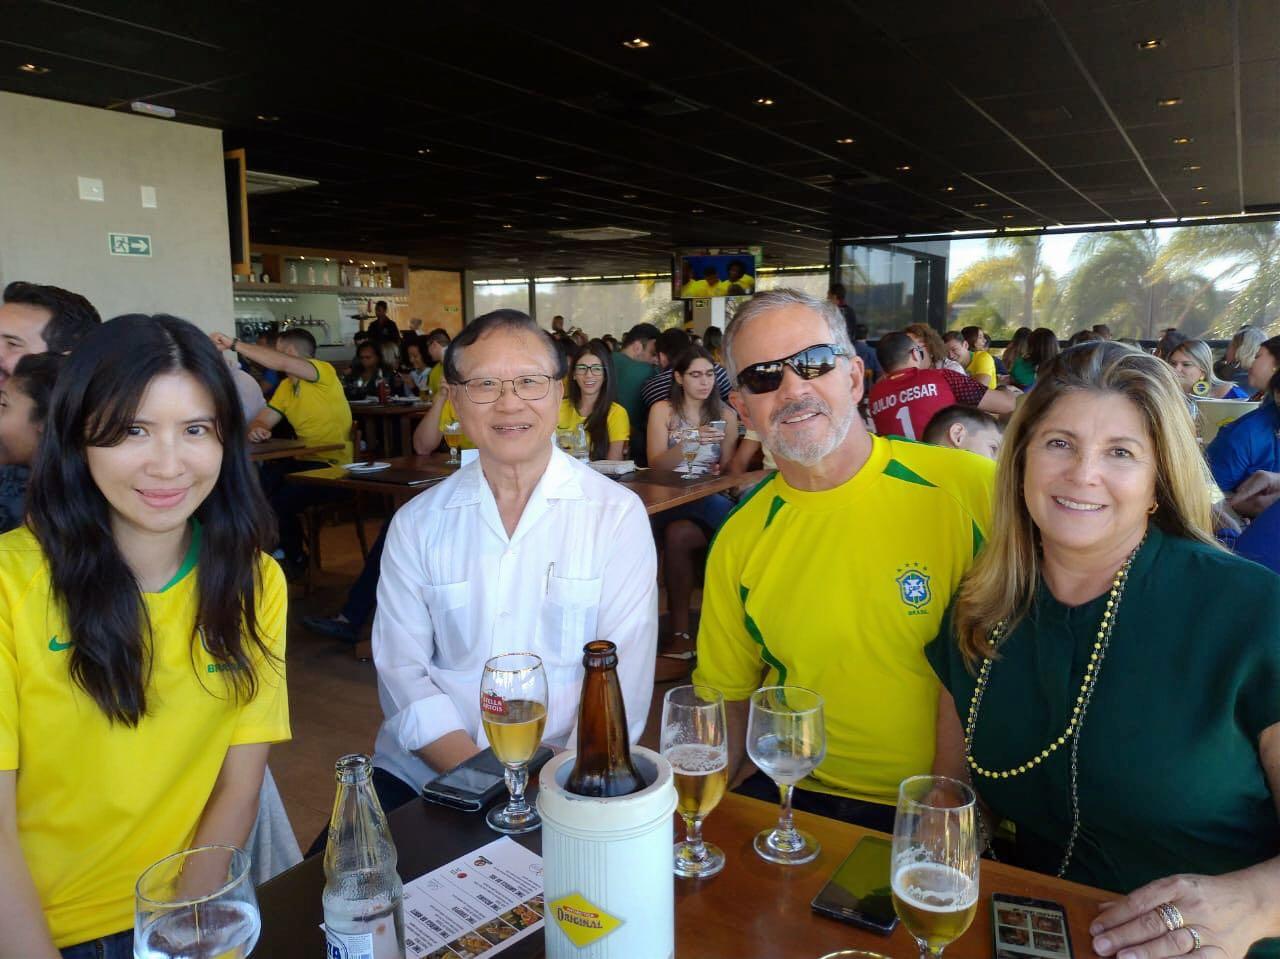 本(7)月6日下午世界盃足球賽由巴西出戰比利時爭取4強門票，蔡孟宏大使與Wilson教授夫婦相約觀賽，融入巴西社會重視足球運動的氛圍。